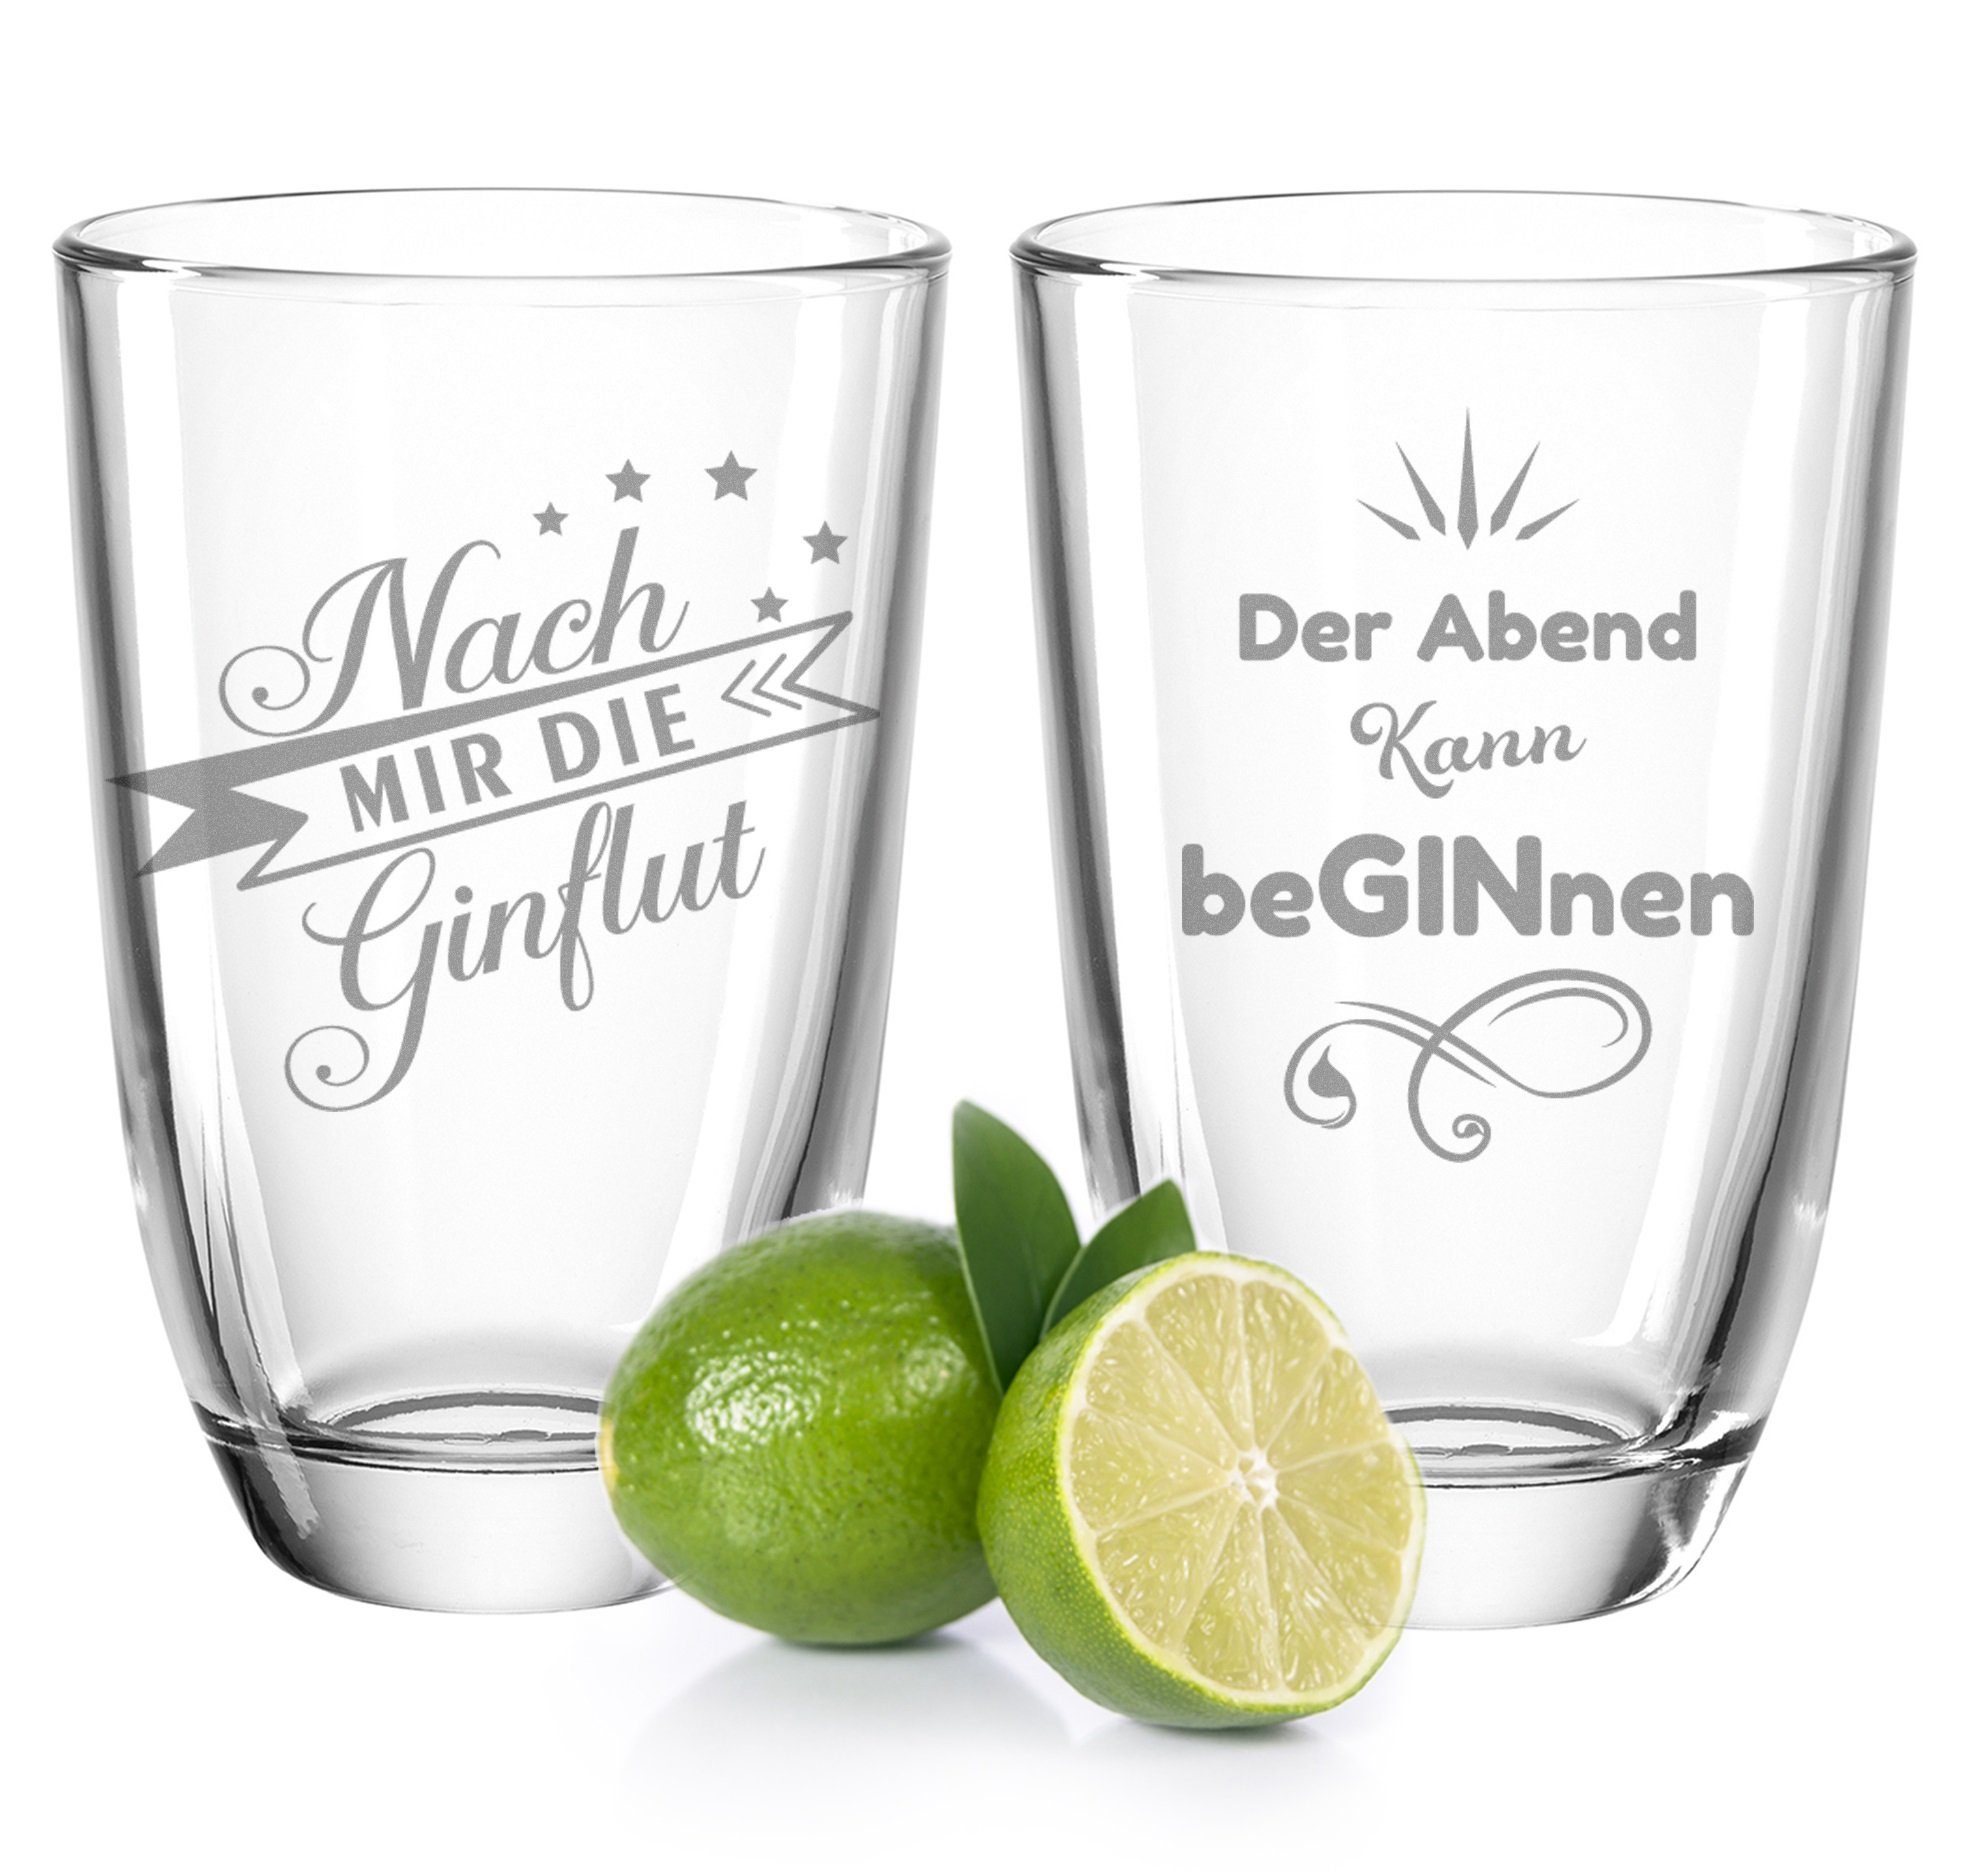 GRAVURZEILE Cocktailglas 2er Set GIN-Gläser - Nach mir die GINflut & Der Abend kann beGINnen, Glas, Montana Gin Скло als Geschenkset für Gin Liebhaber